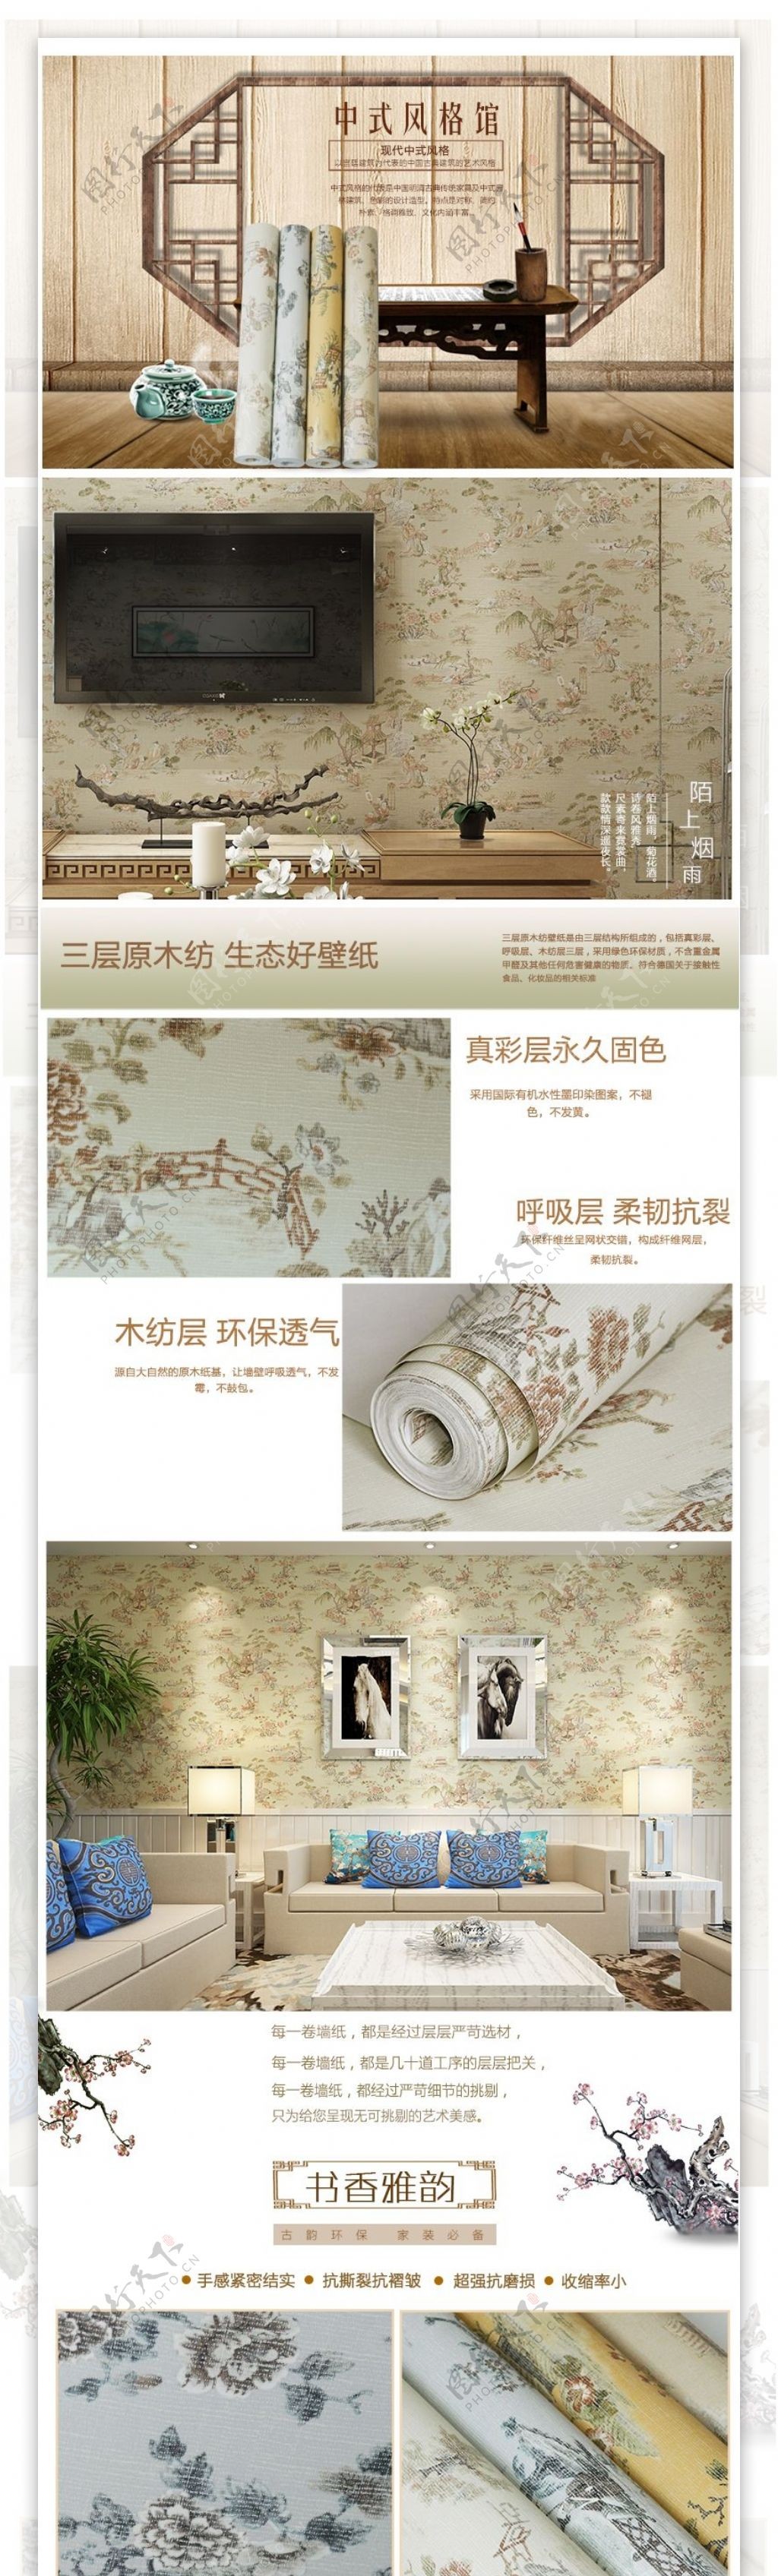 中式墙纸详情详情页